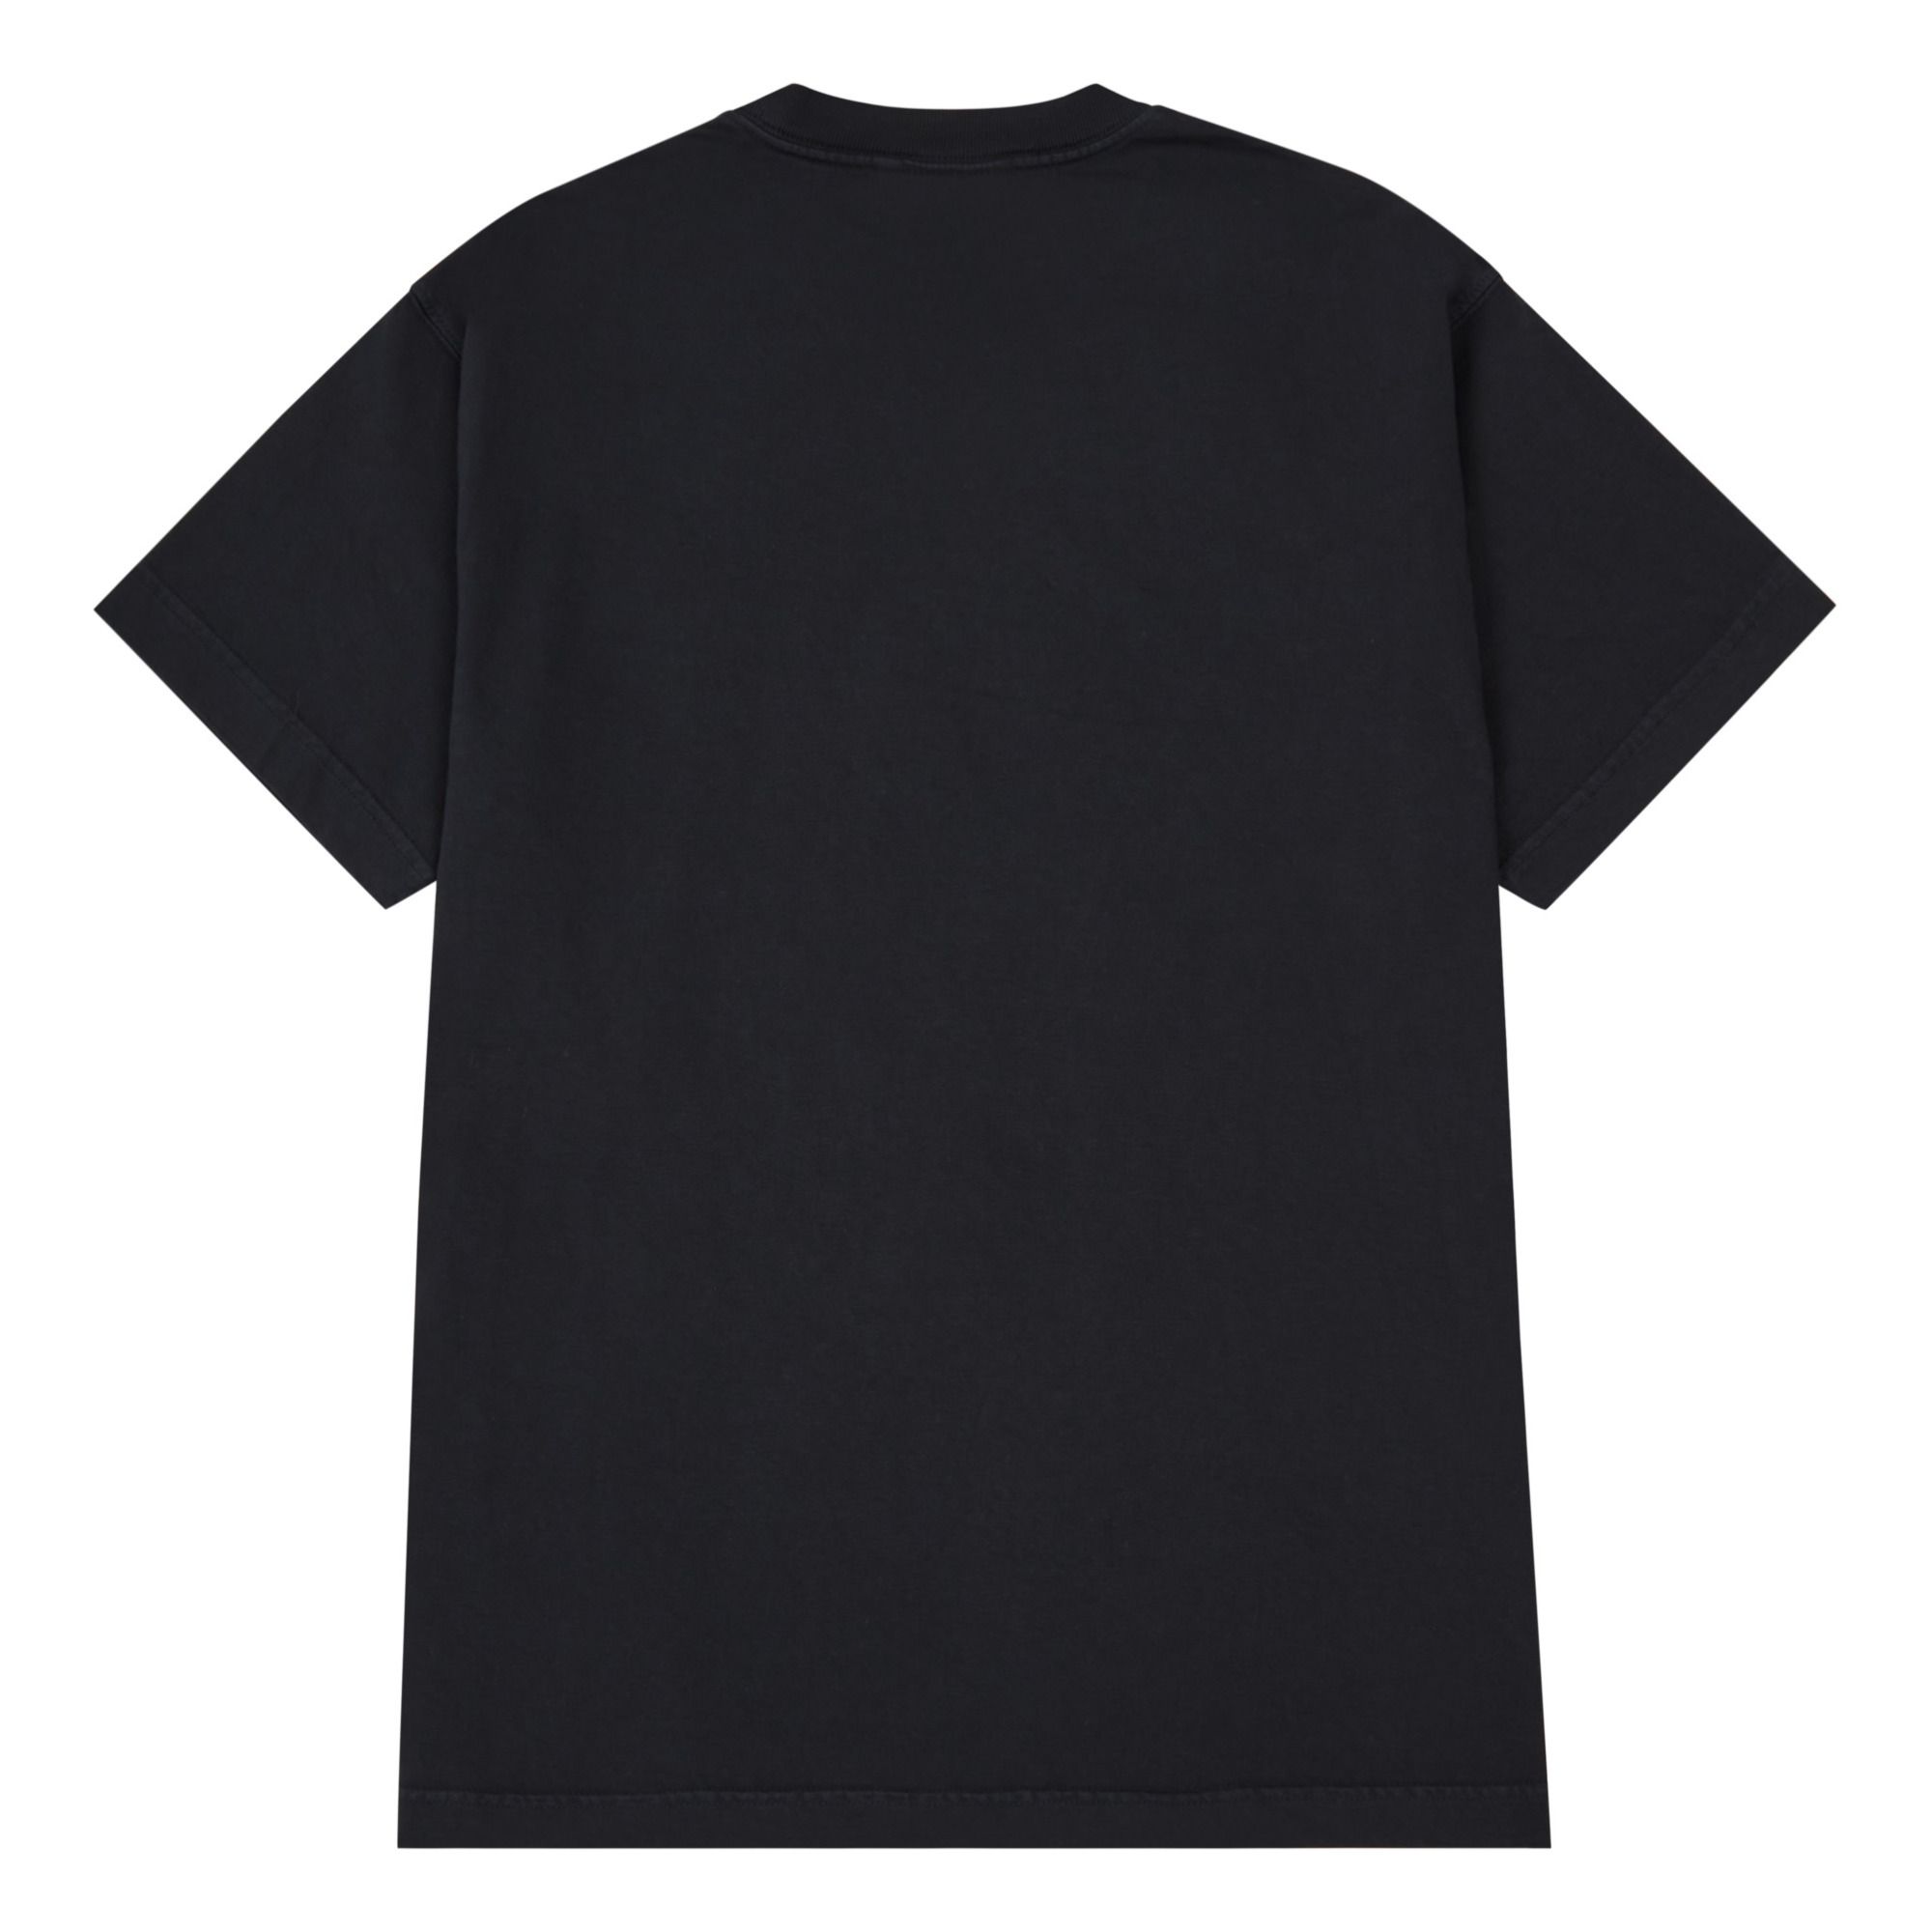 T-Shirt Vista aus Bio-Baumwolle Schwarz- Produktbild Nr. 2